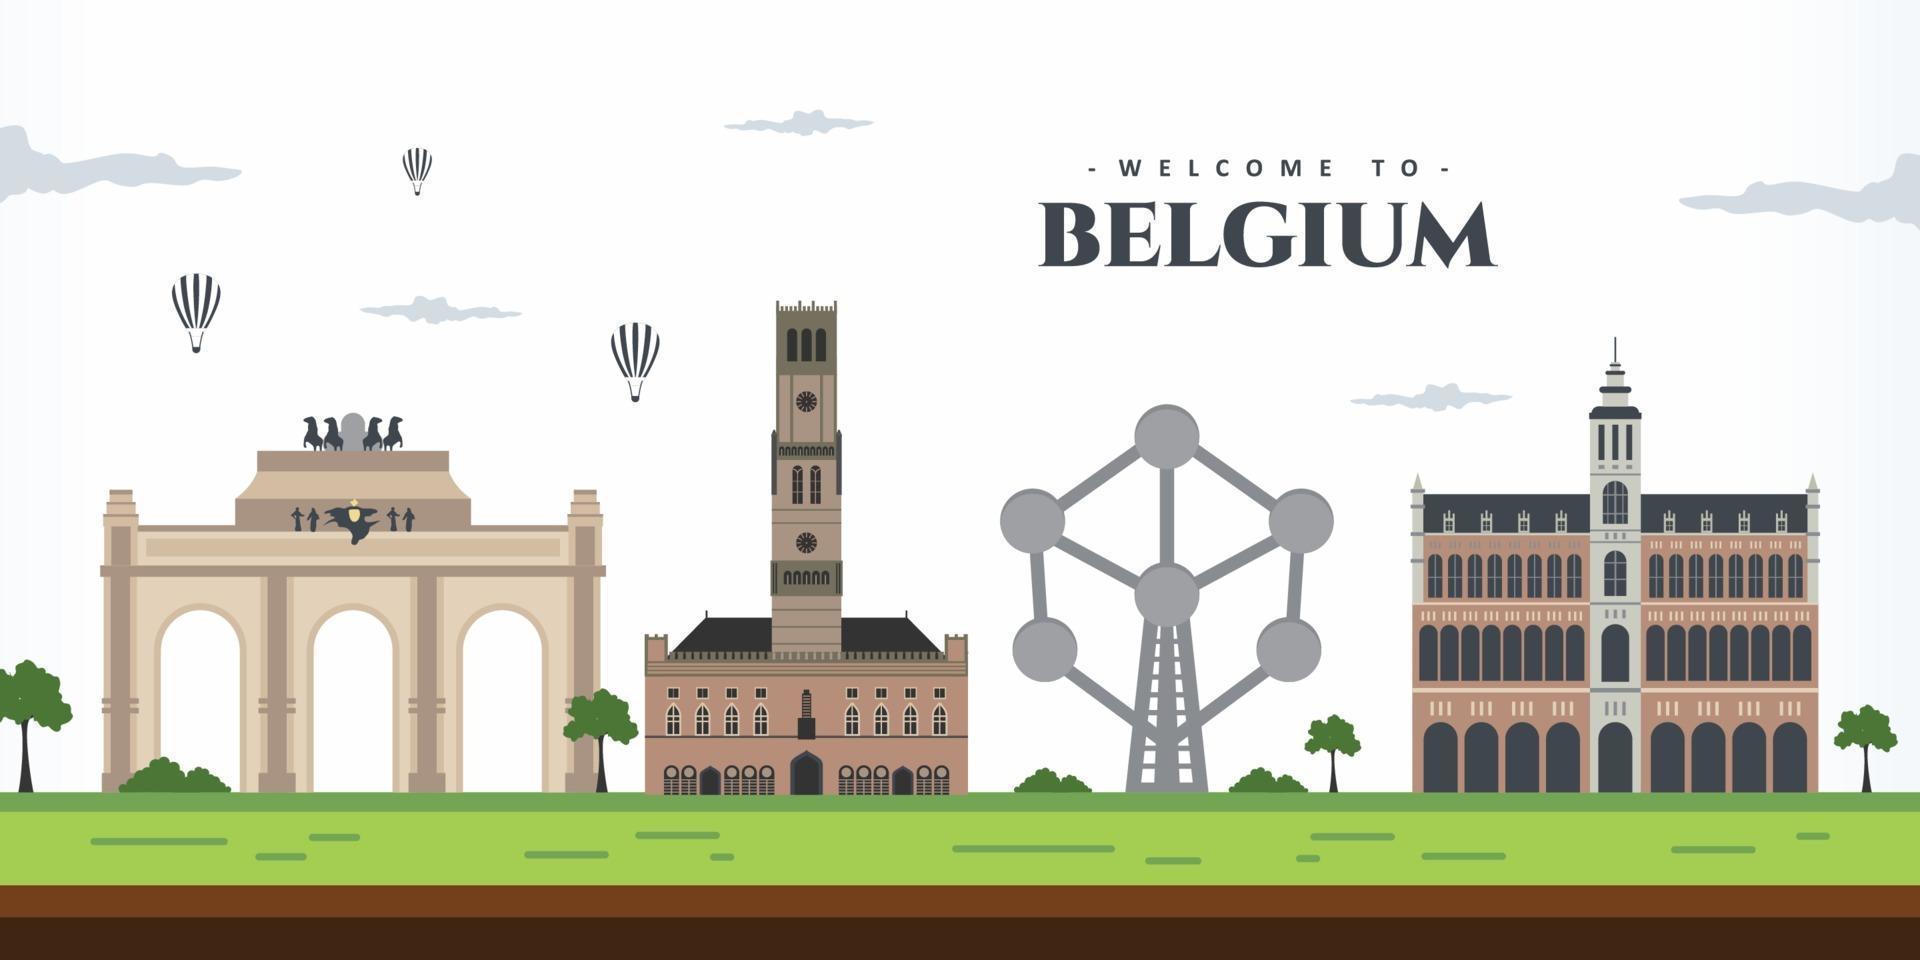 panoramisch uitzicht op belgië. prachtig stadslandschap van België met verbazingwekkende beroemde bezienswaardigheid. geweldige bouwarchitectuur. zakenreizen en toerisme concept. vector